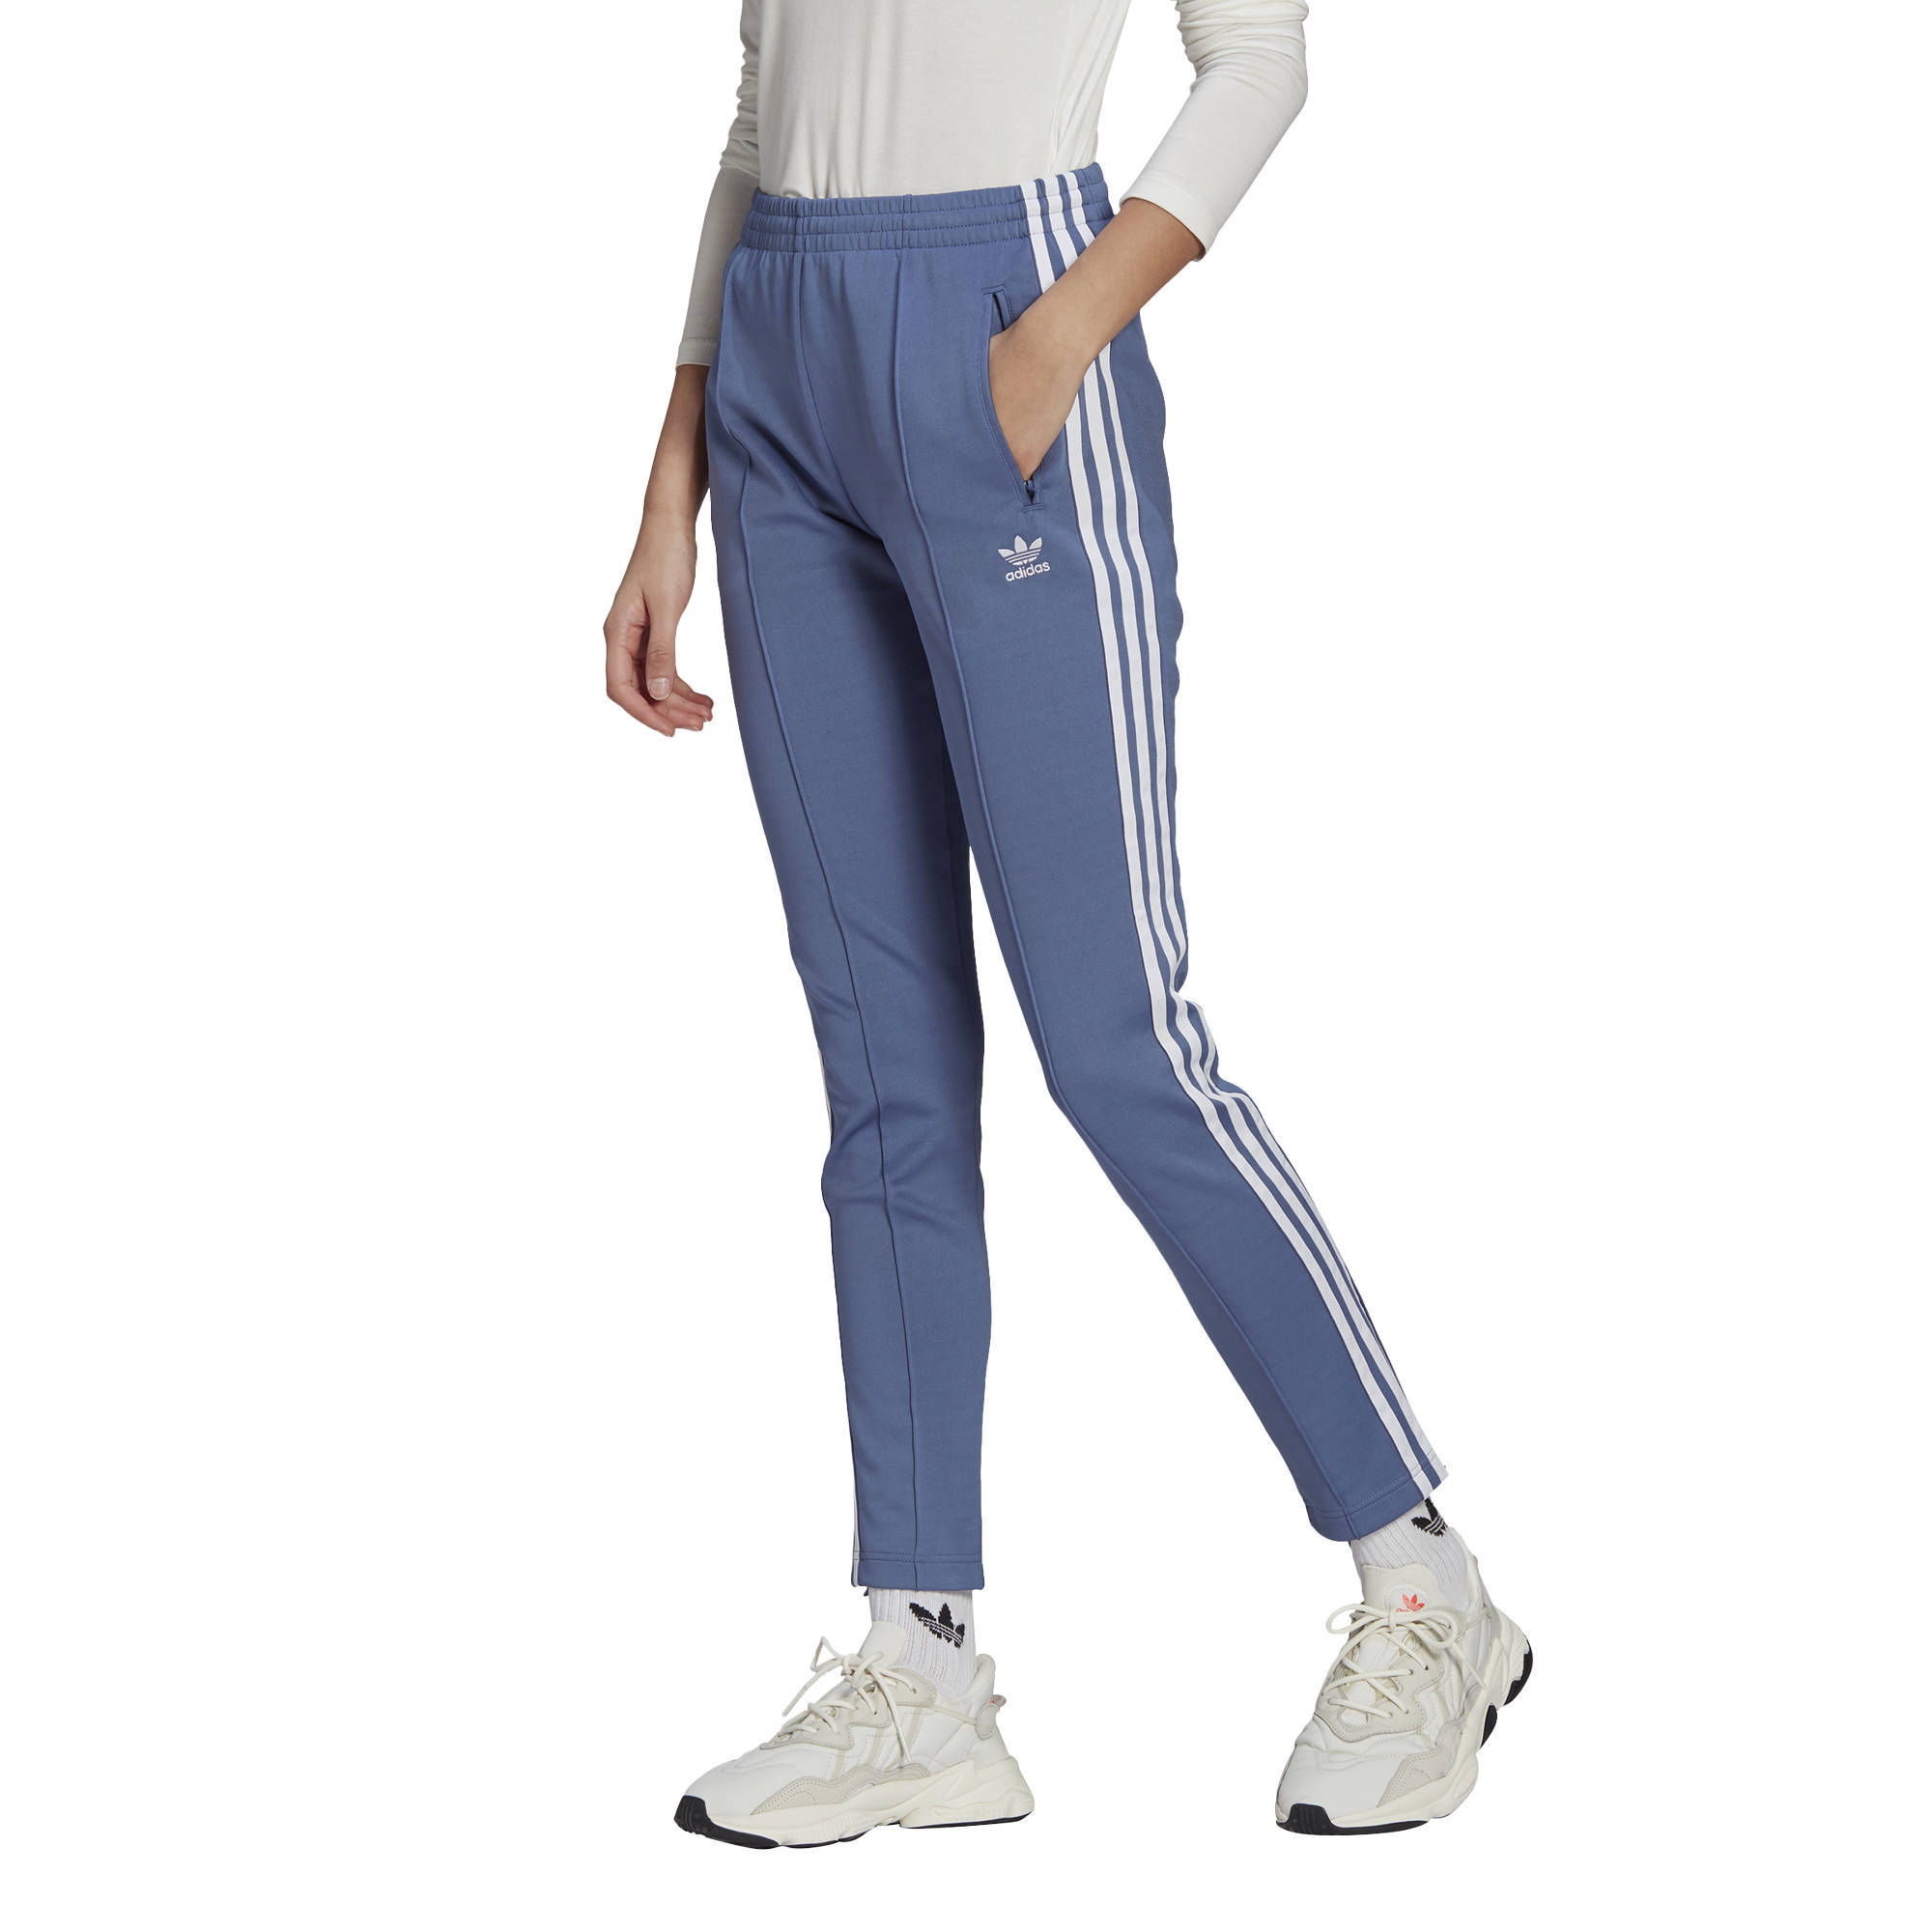 Superstar Adicolor joggingbroek blauw/wit